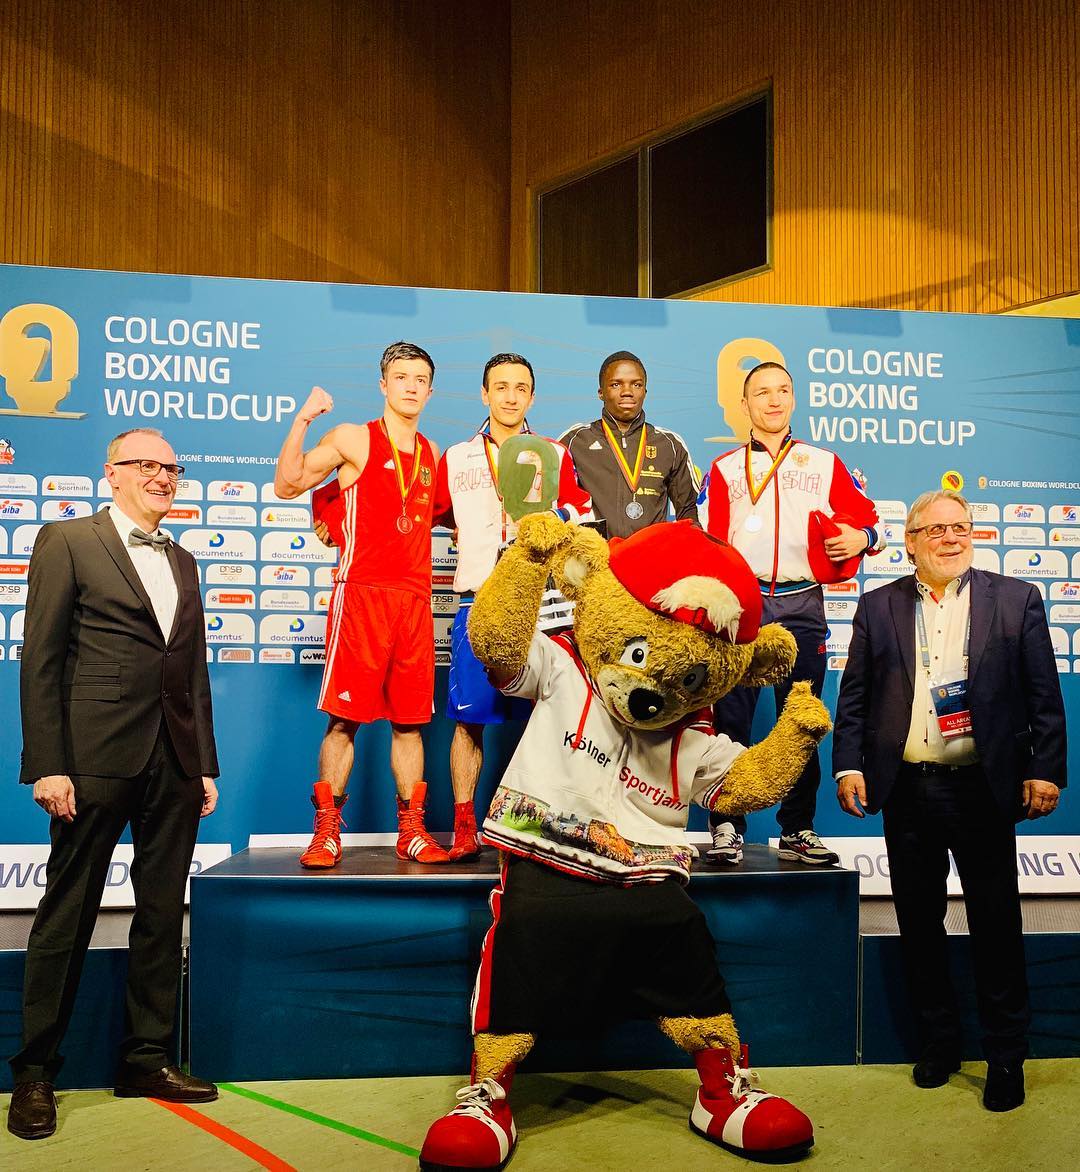 Габил Мамедов привез золото с Кубка мира по боксу в Кельне